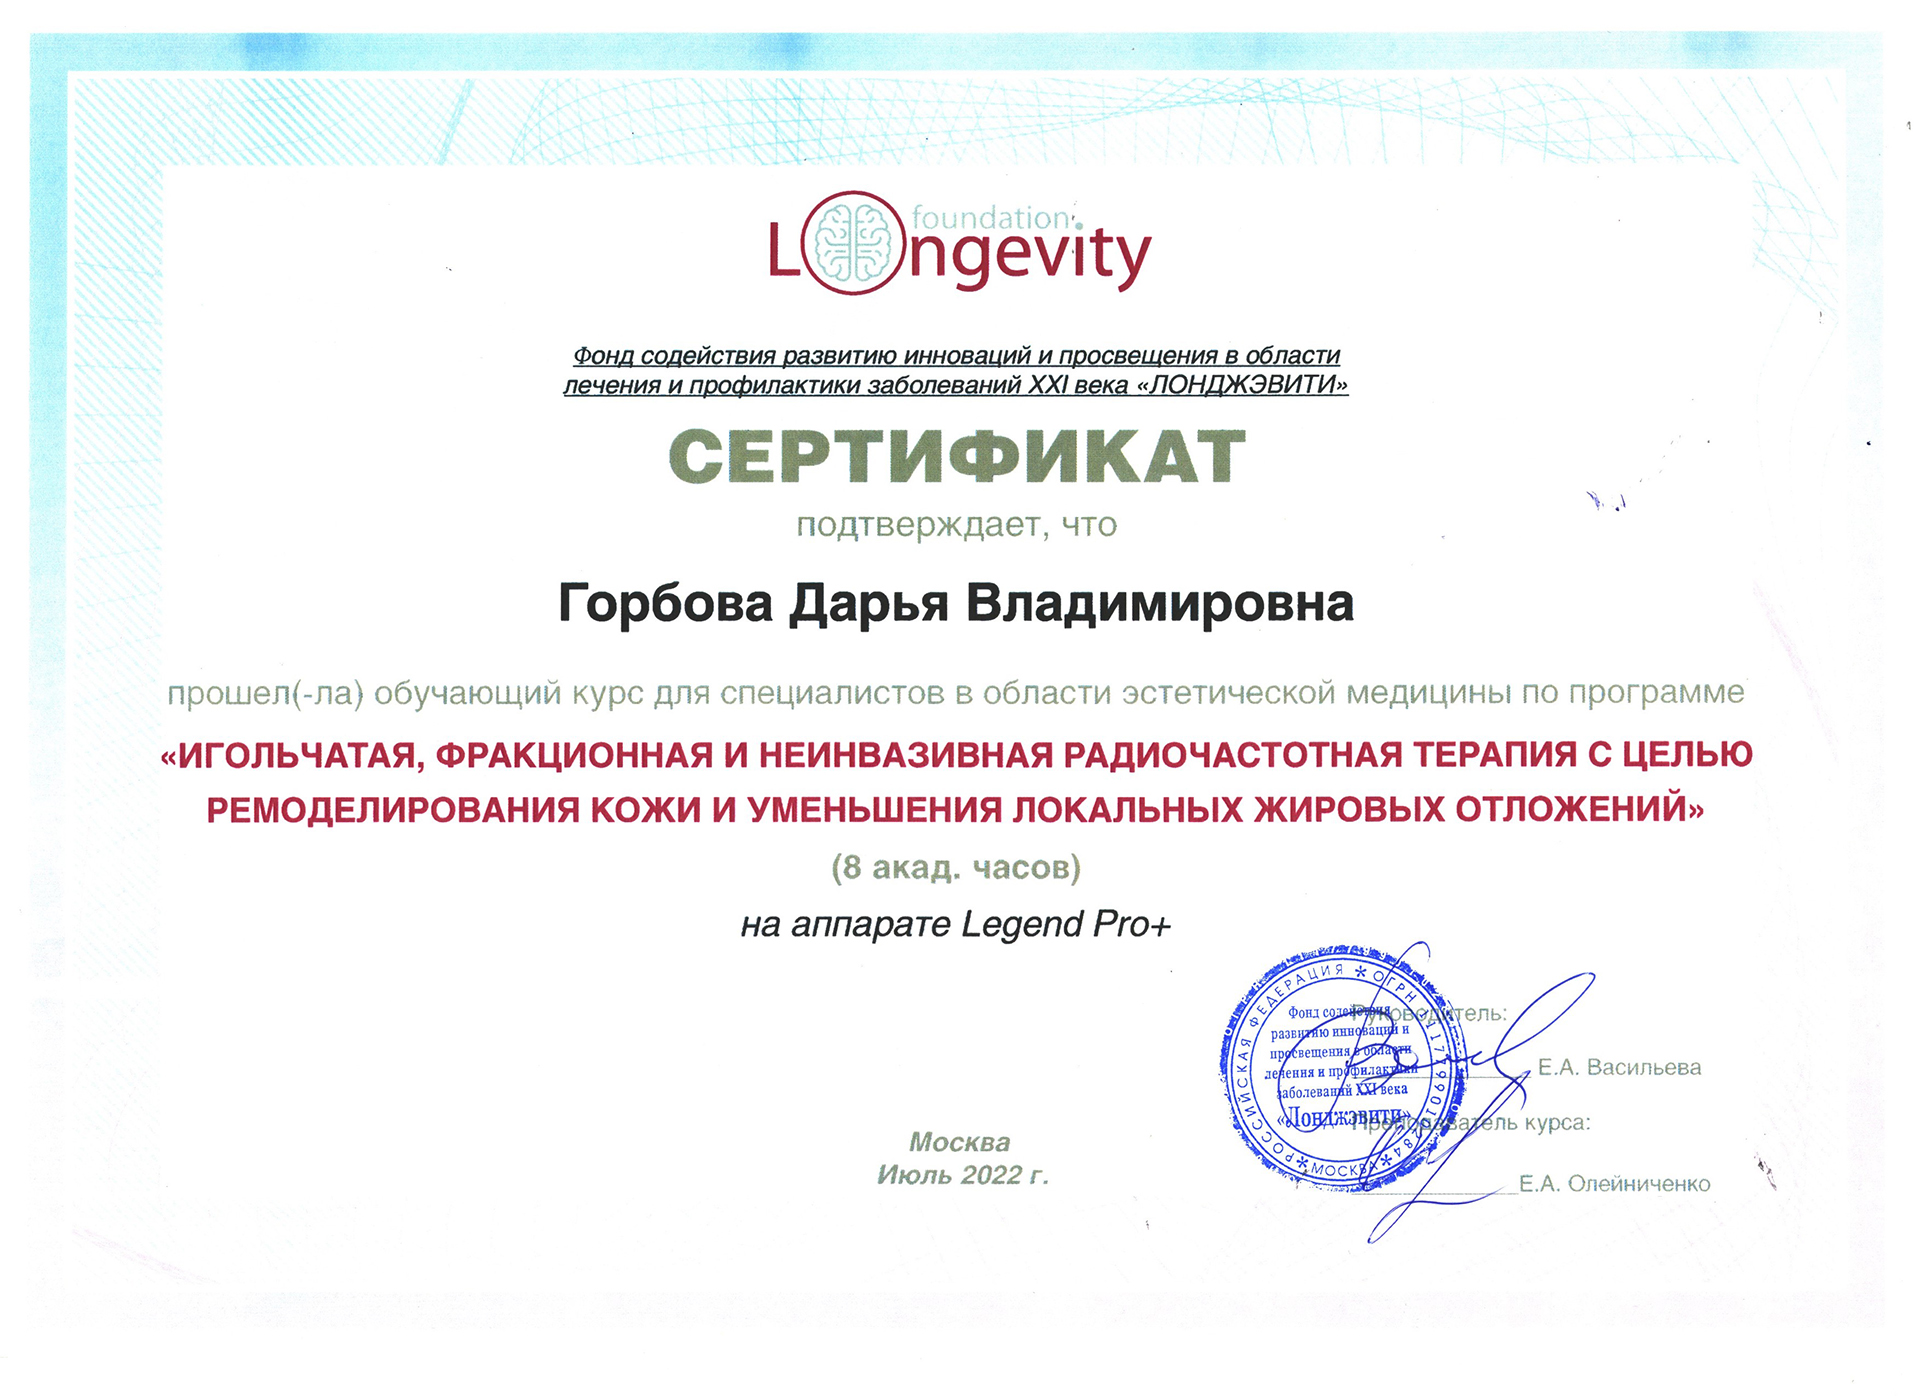 Сертификат — Программа «Игольчатая, фракционная и неинвазивная радиочастотная терапия». Горбова Дарья Владимировна